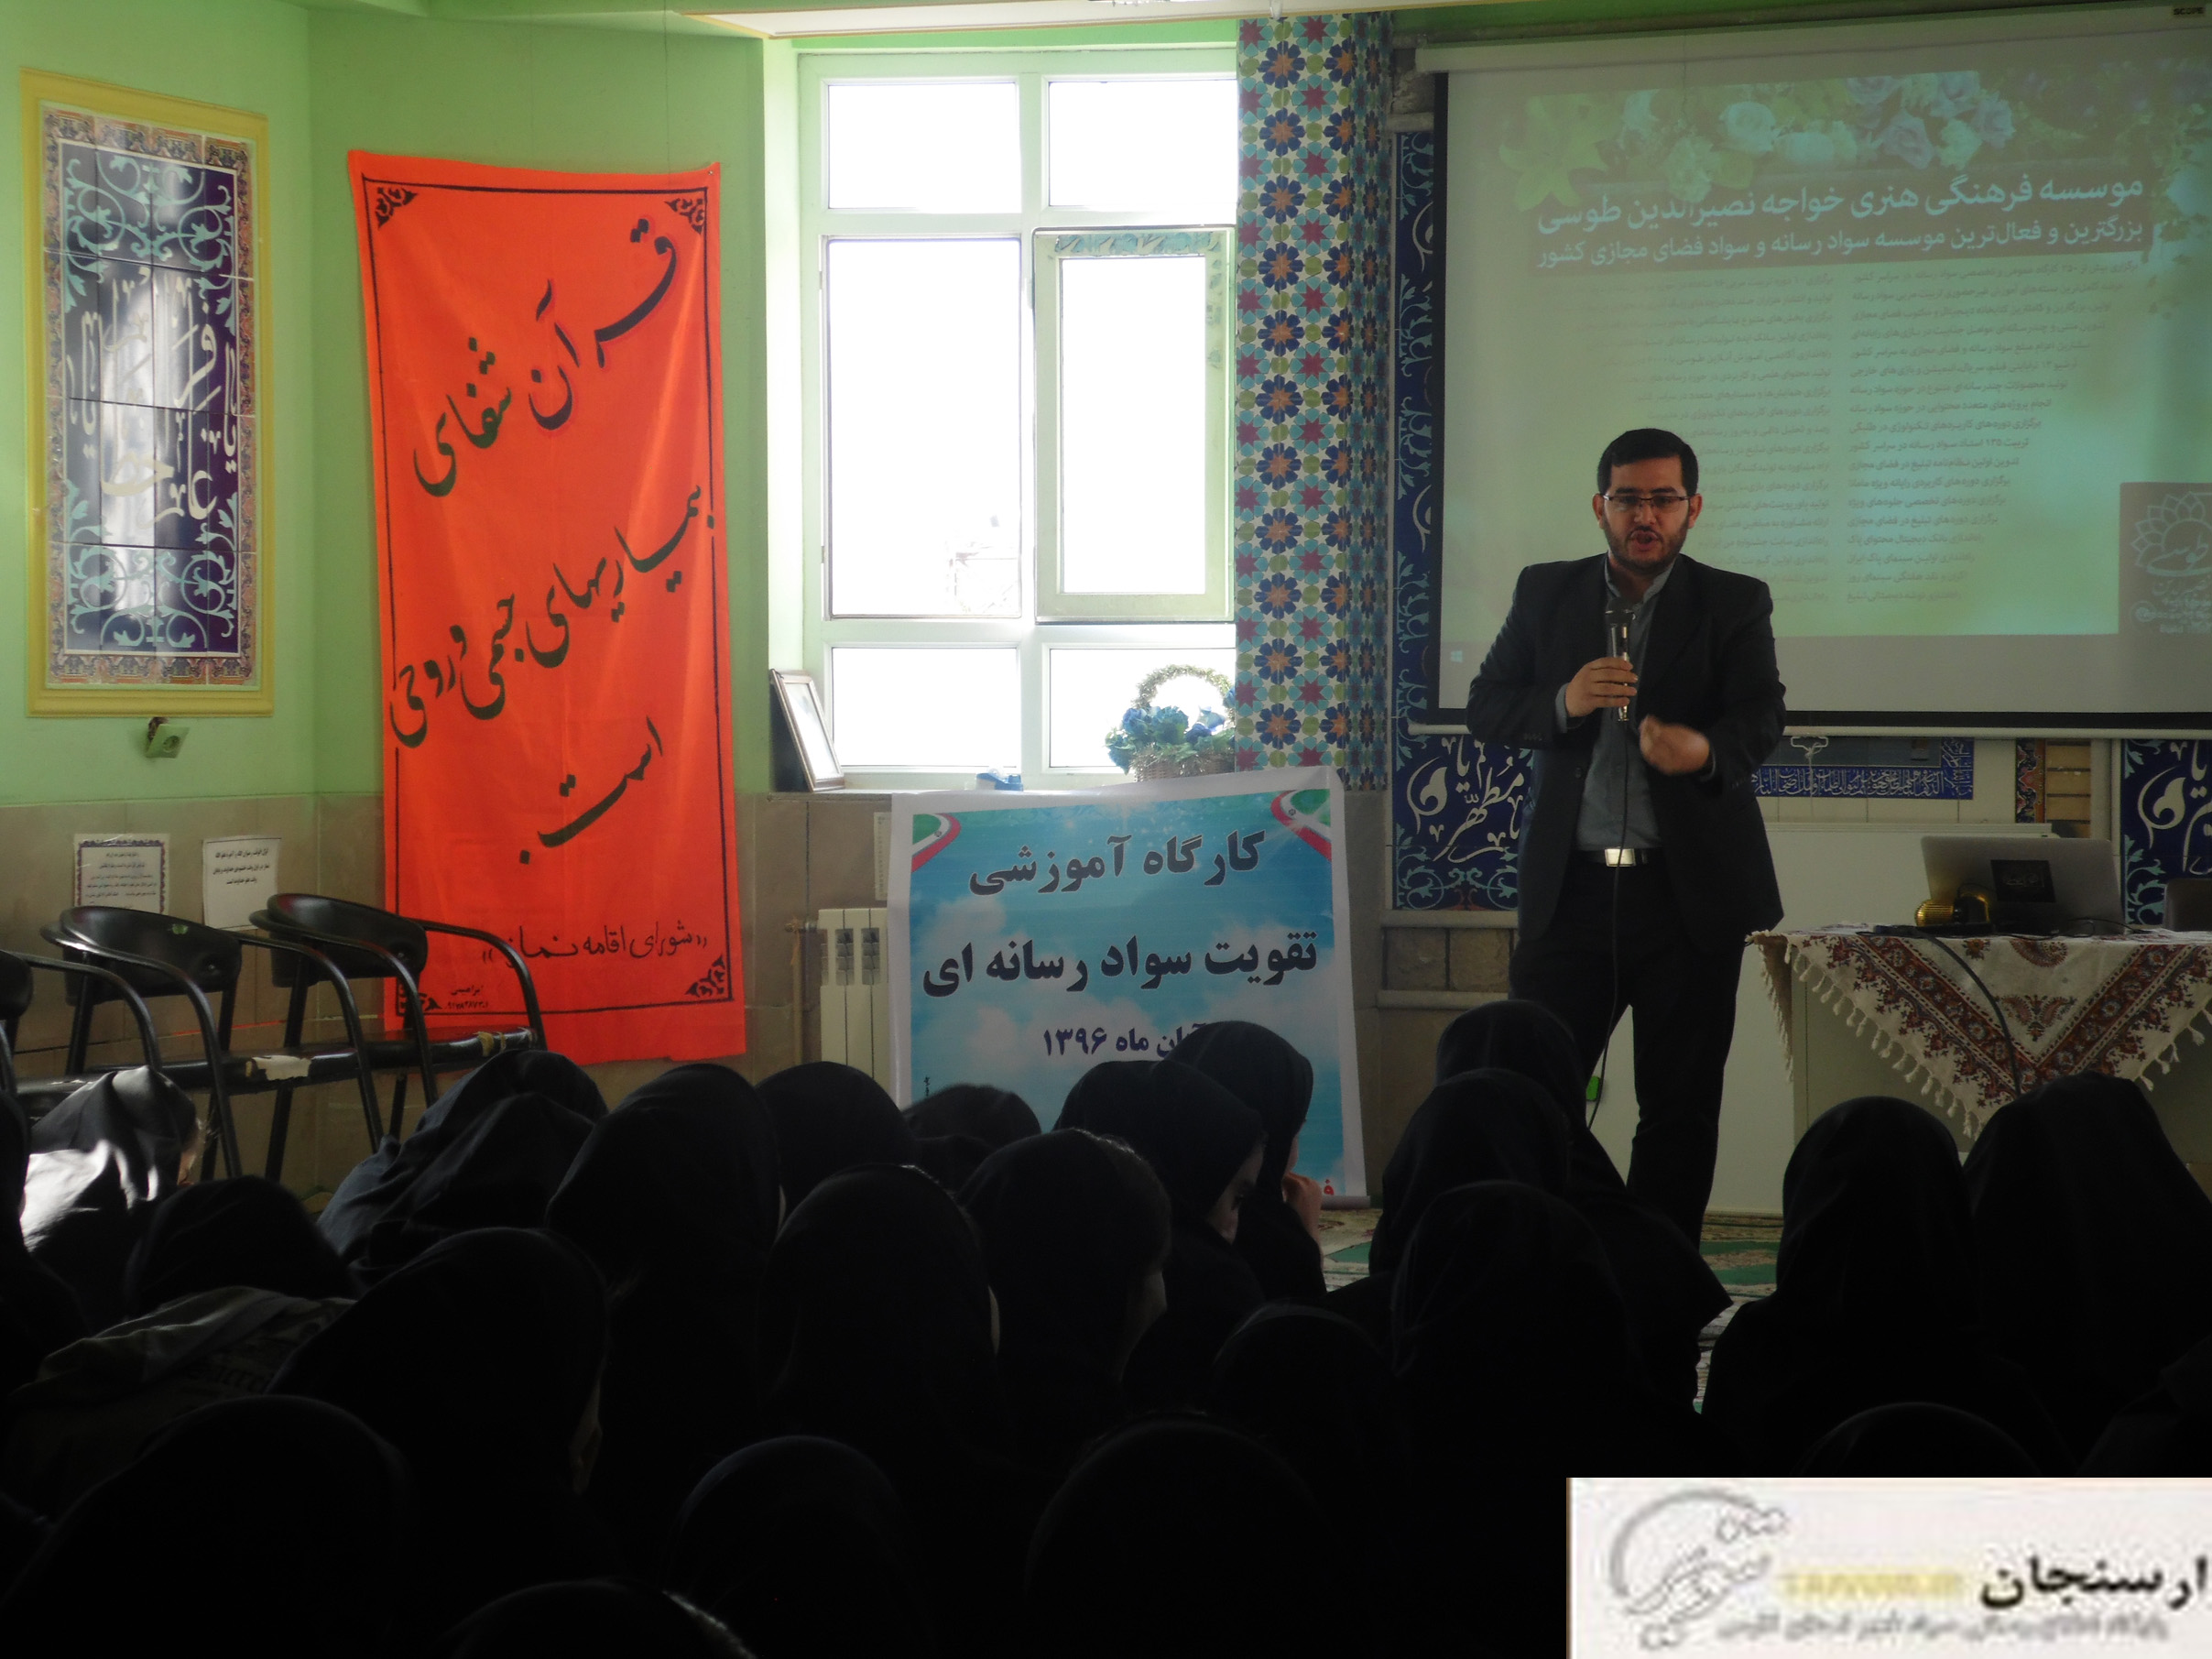 نخستین کارگاه آموزشی سواد رسانه ای برای دانش آموزان-پایوران-معلمان وبسیجیان برگزار شد